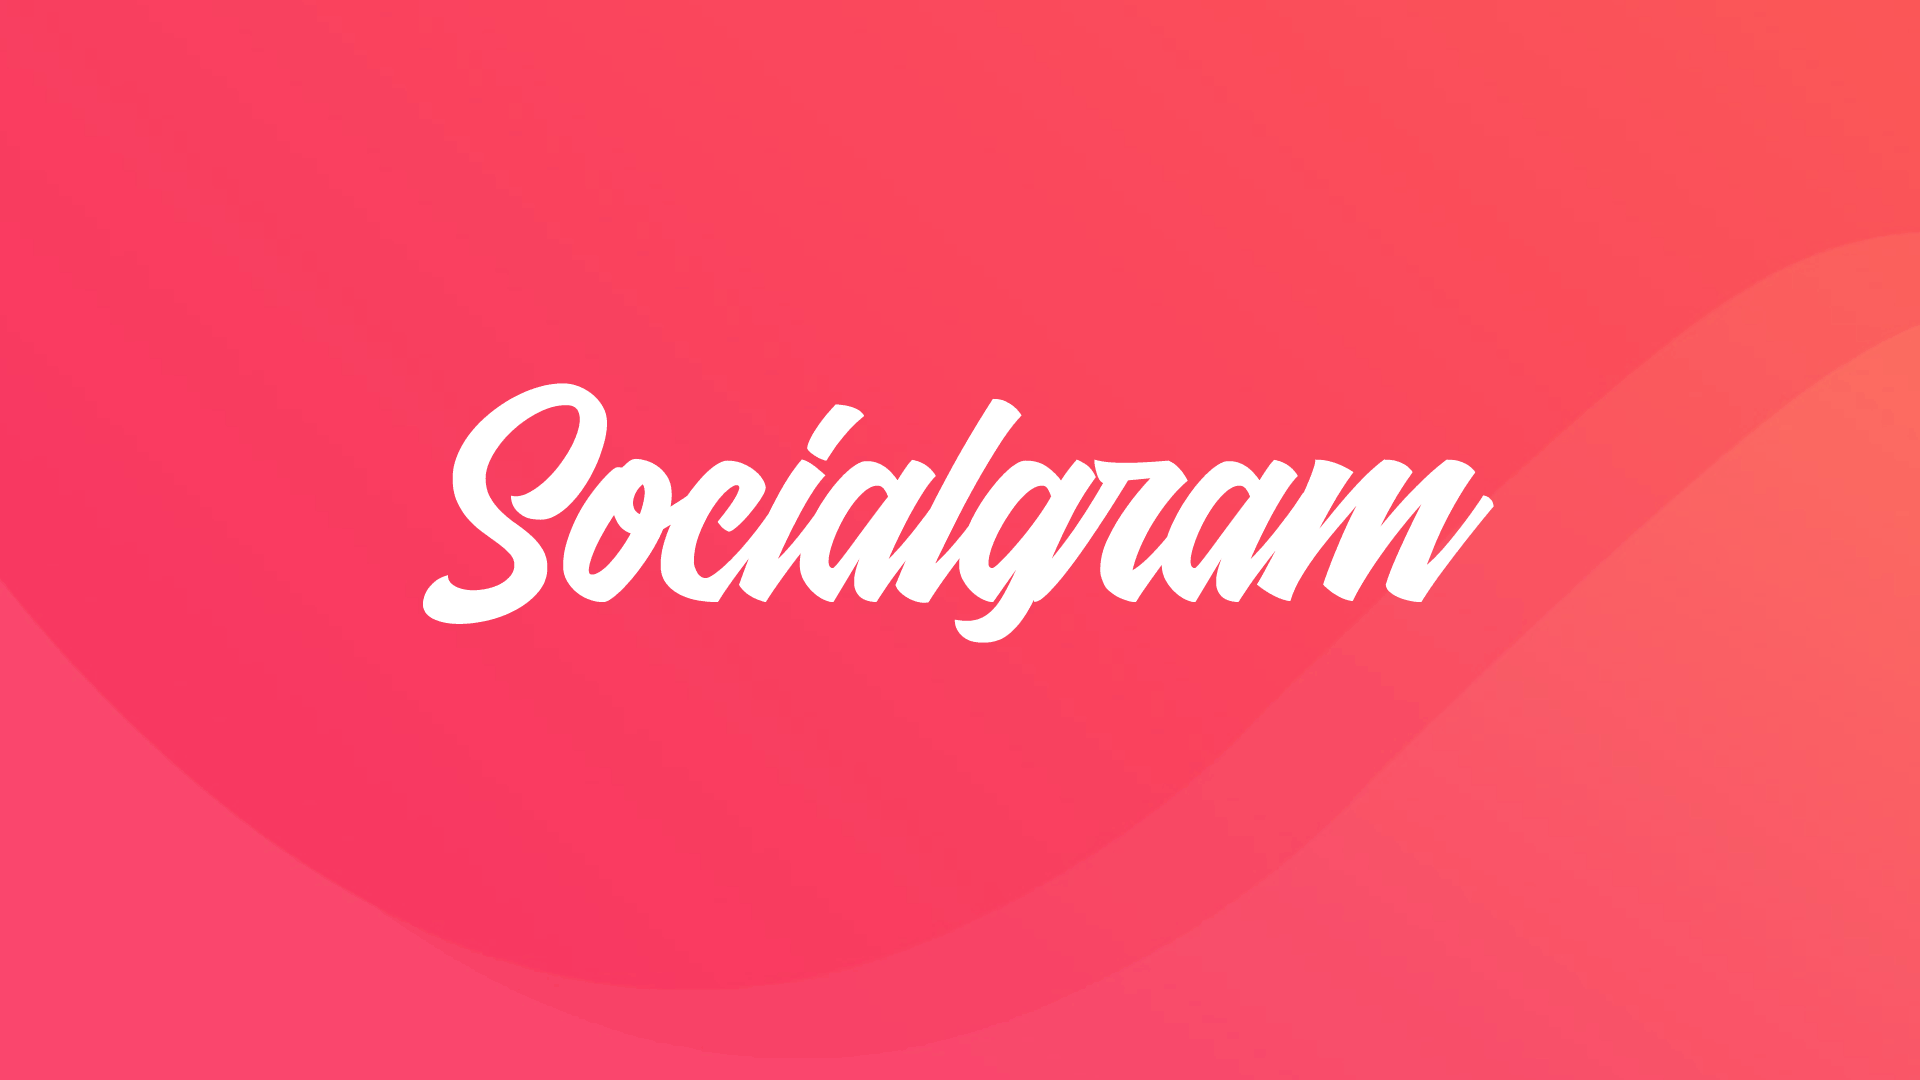 SocialGram